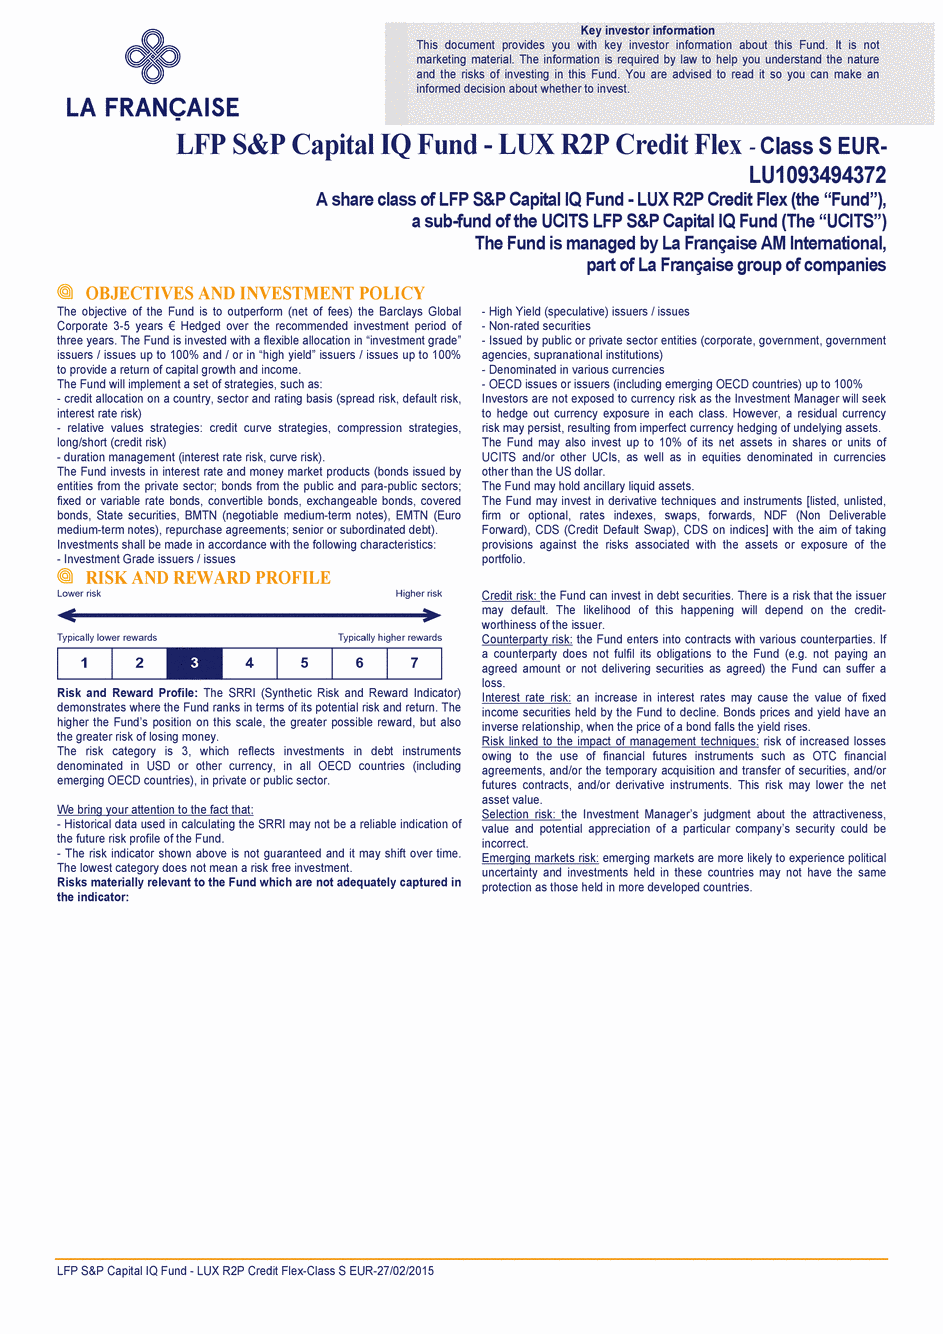 DICI LFP S&P Capital IQ Fund - LUX R2P Credit Flex S CAP EUR - 27/02/2015 - Anglais